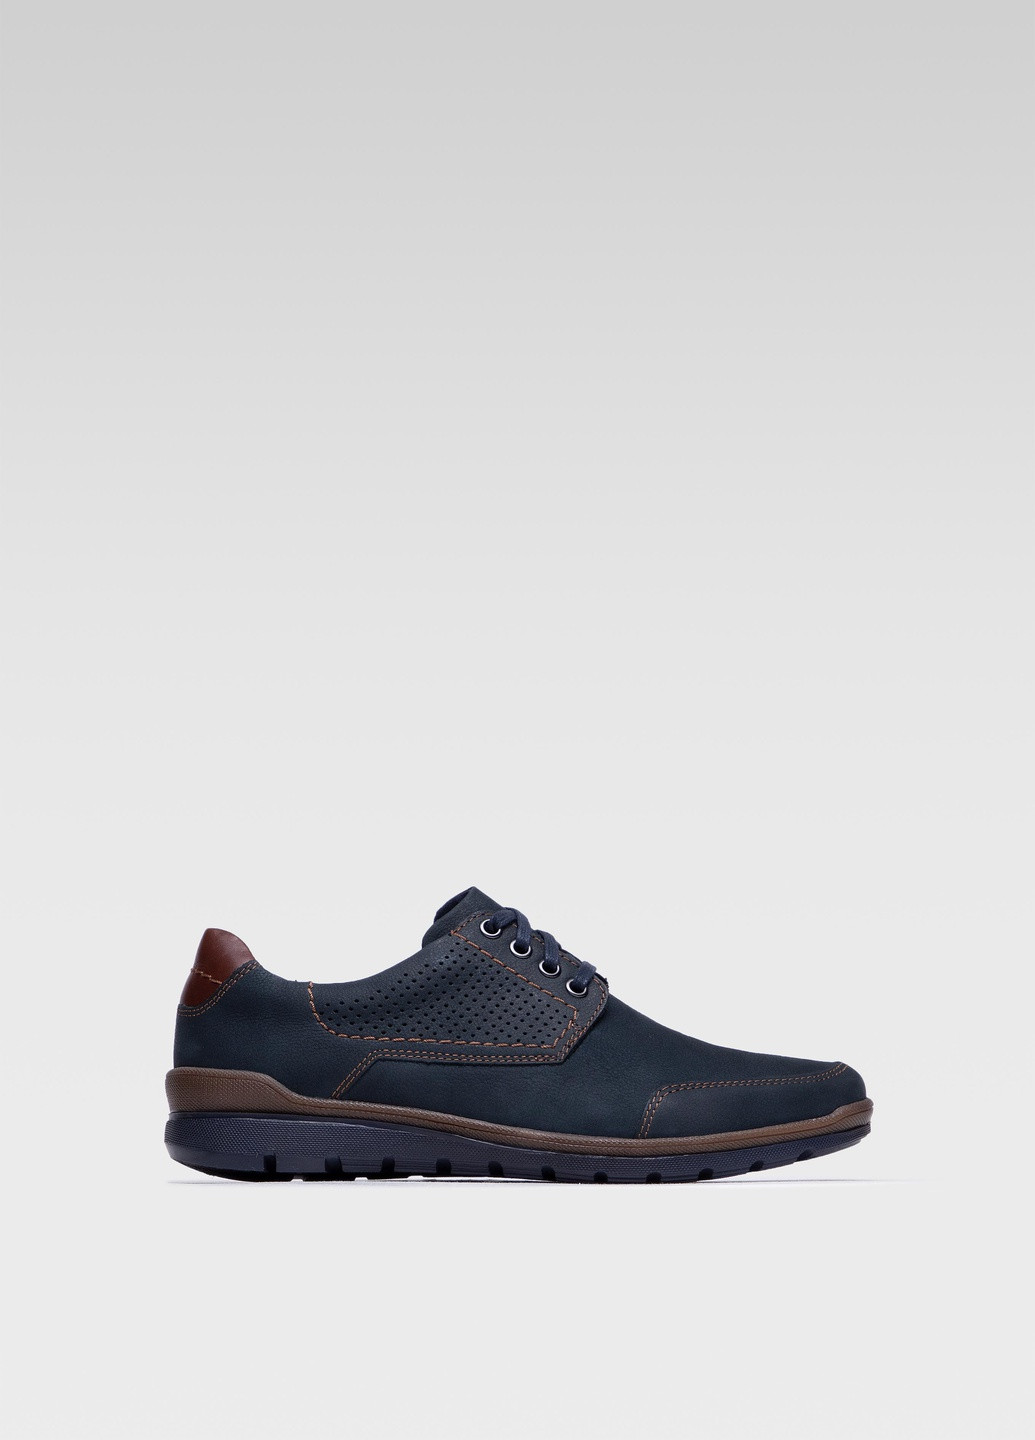 Синие осенние туфлі mb-toledo-04 Lasocki